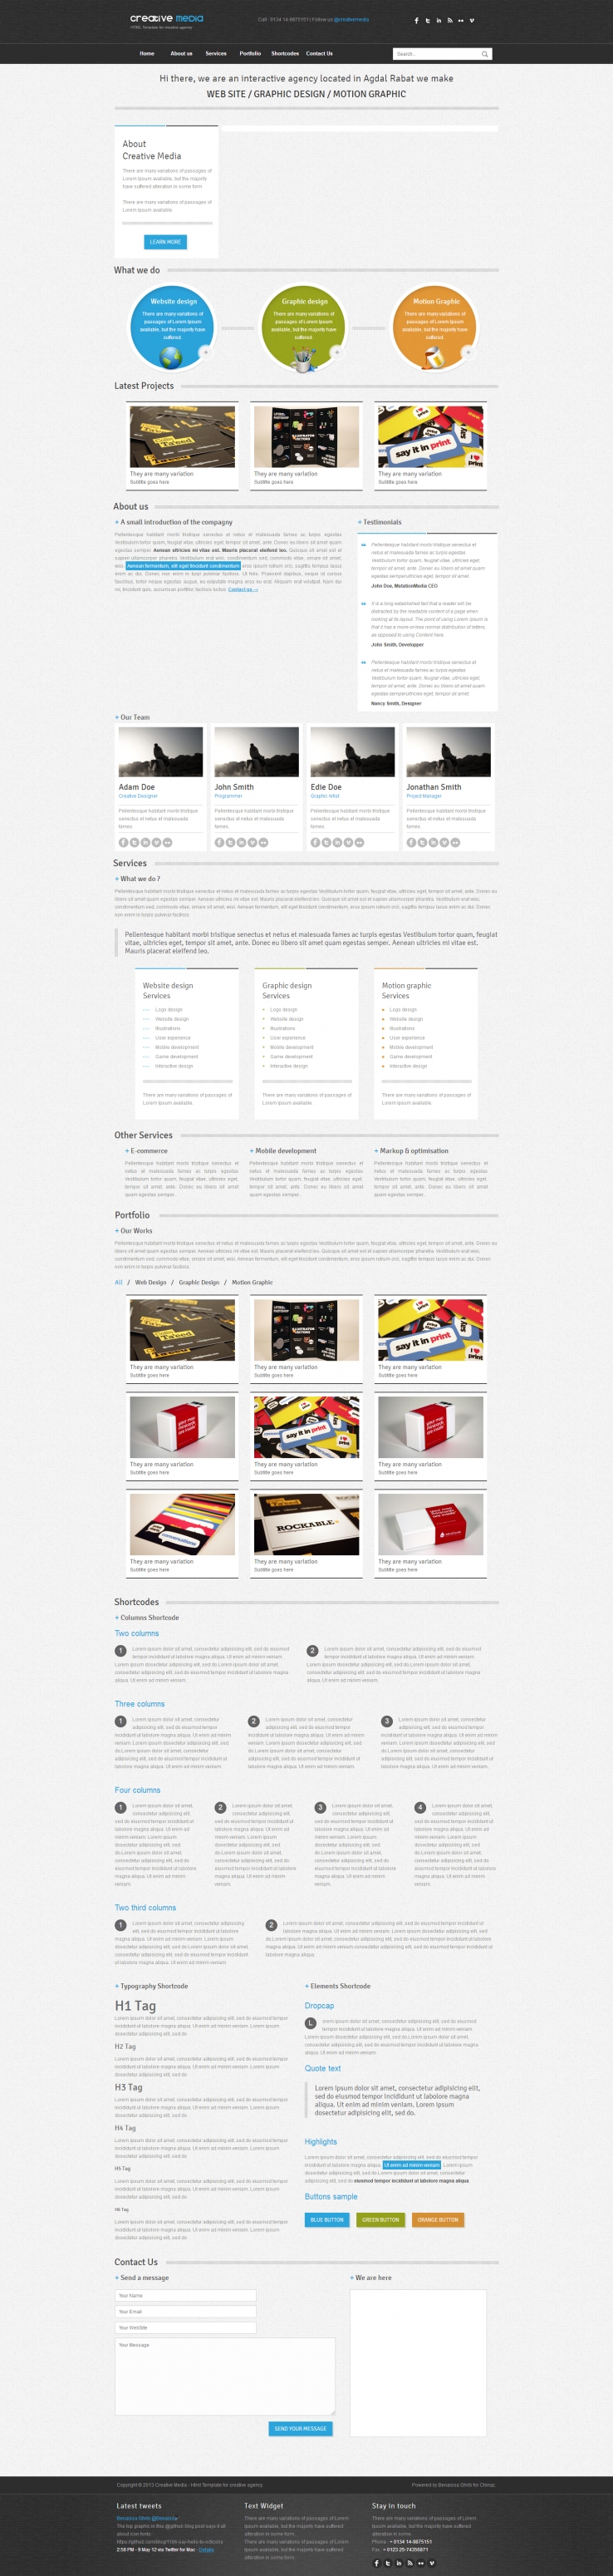 黑色扁平化风格的平面设计网站HTML模板